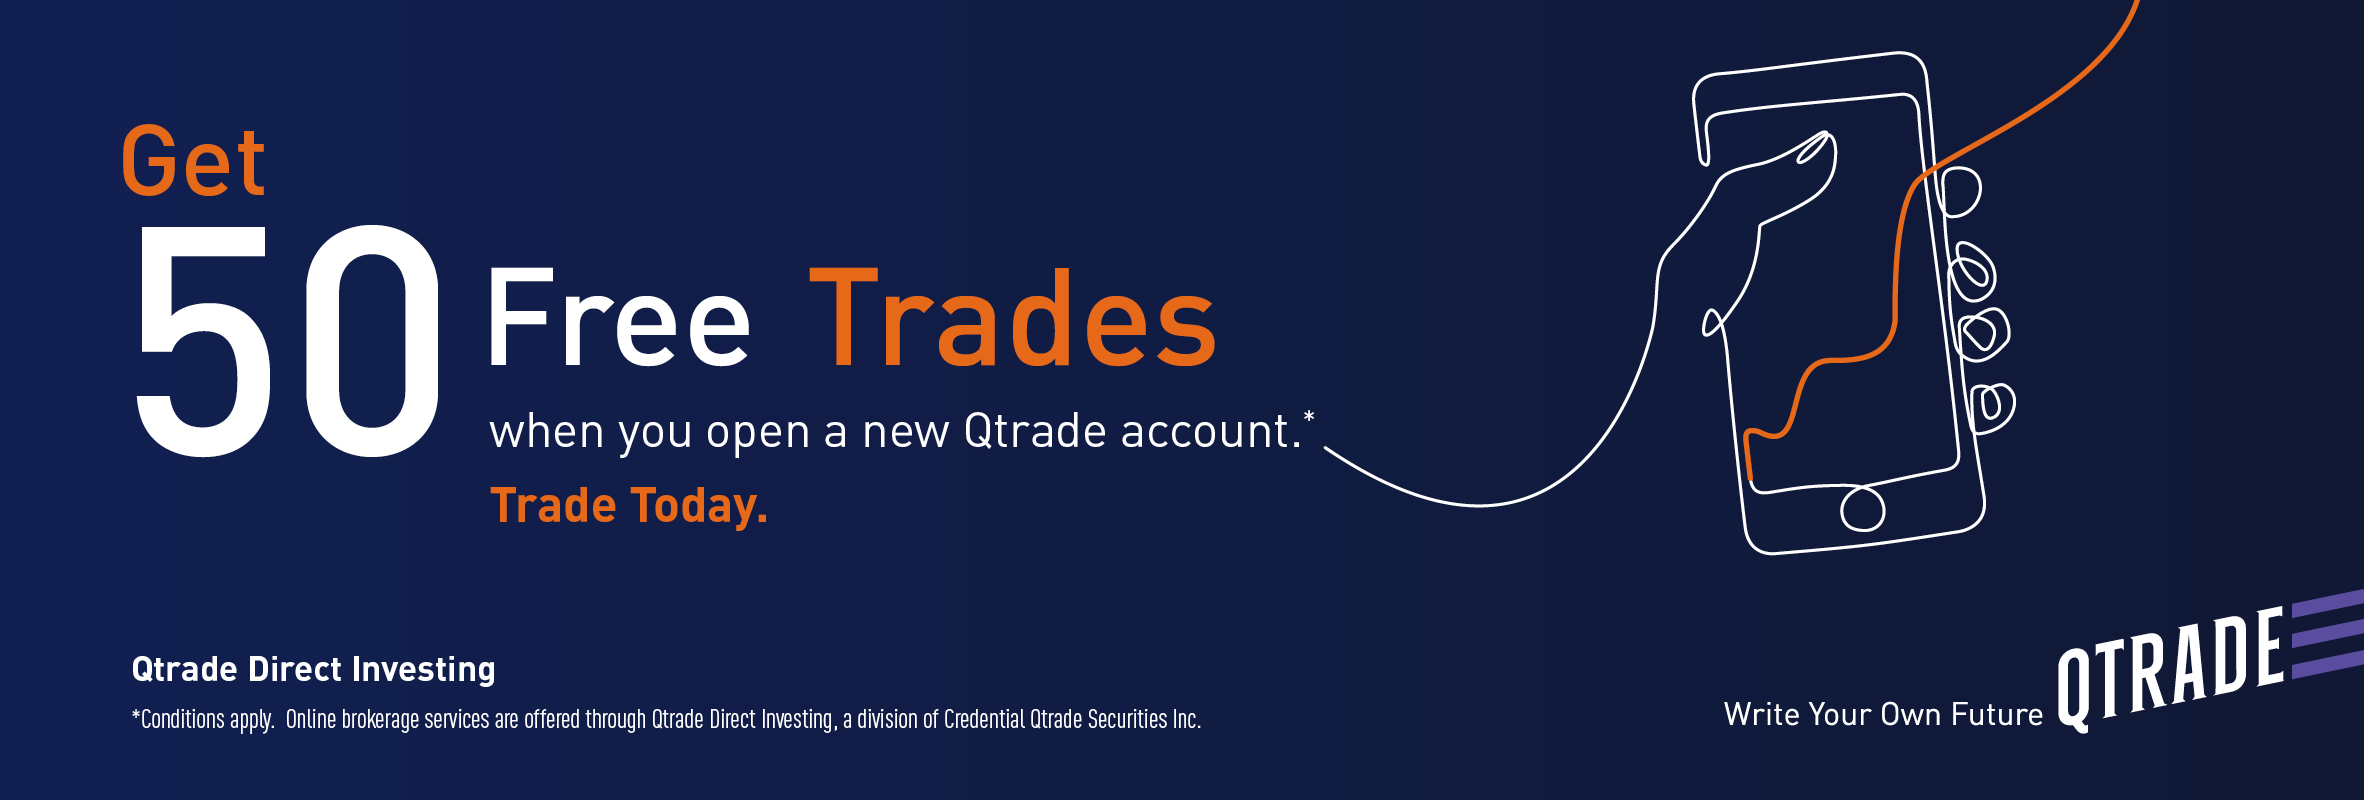 Qtrade 50 Free Trades